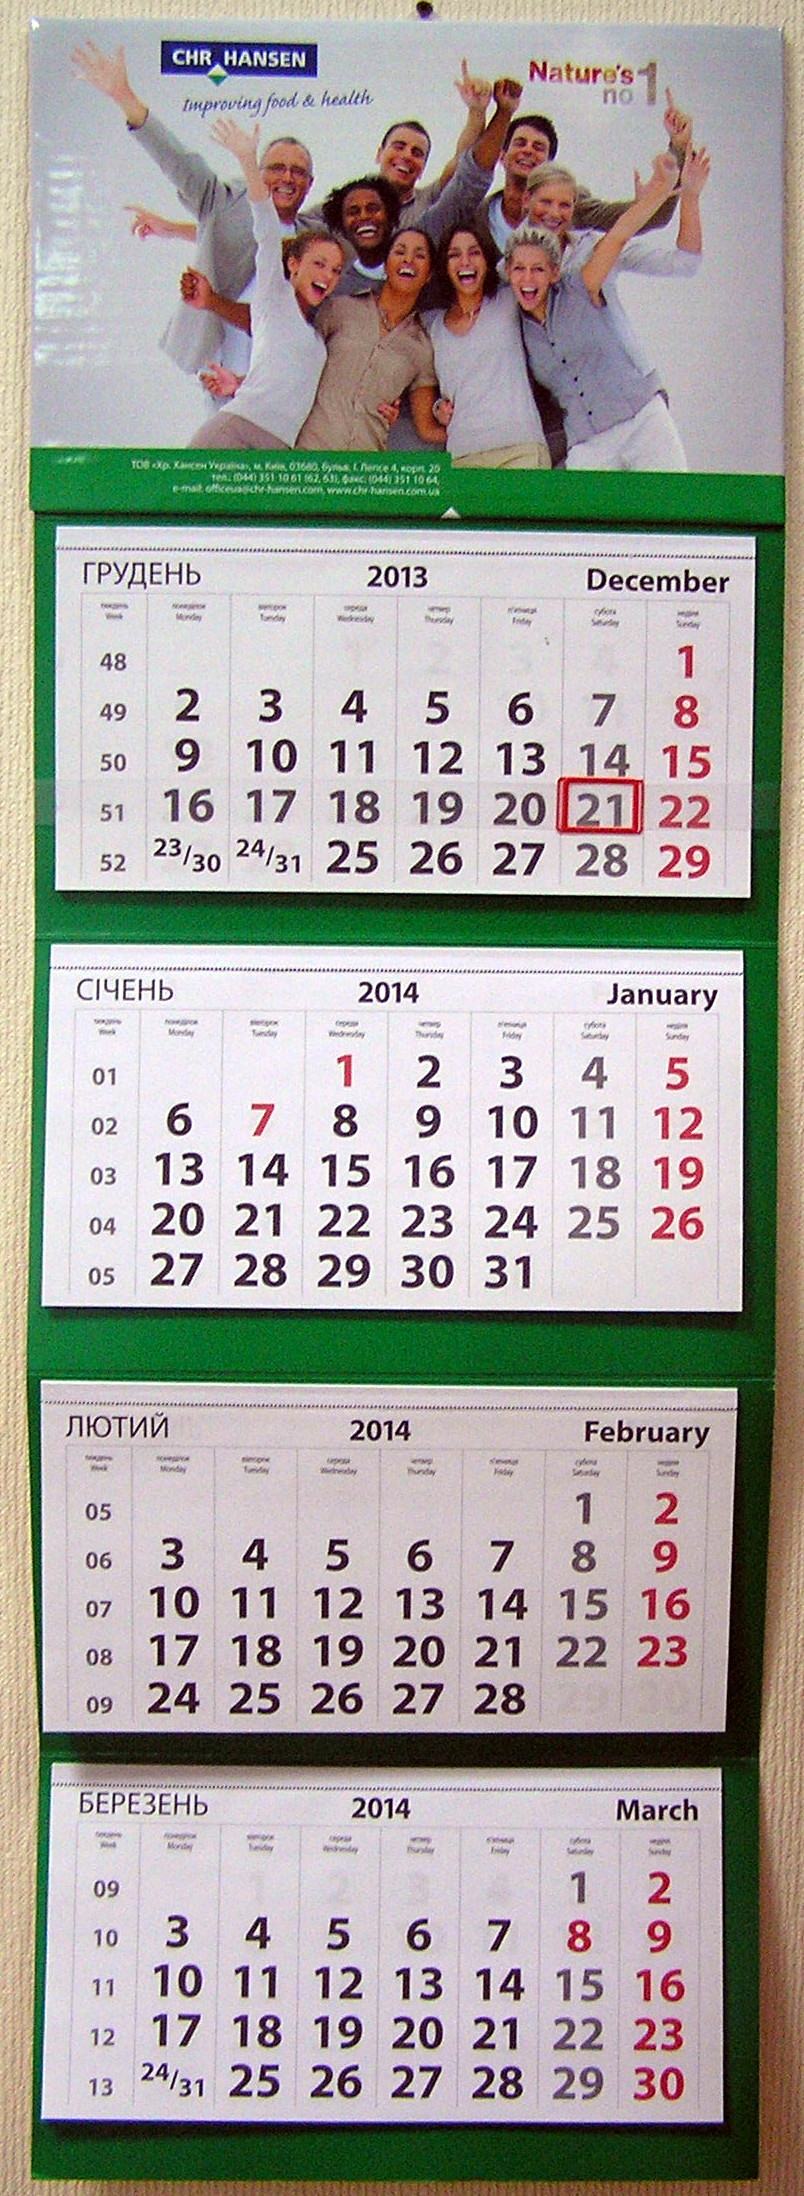 Друк квартальних календарів «CHR HANSEN». Поліграфія друкарні Макрос, виготовлення квартальних календарів, спецификация 966997-1